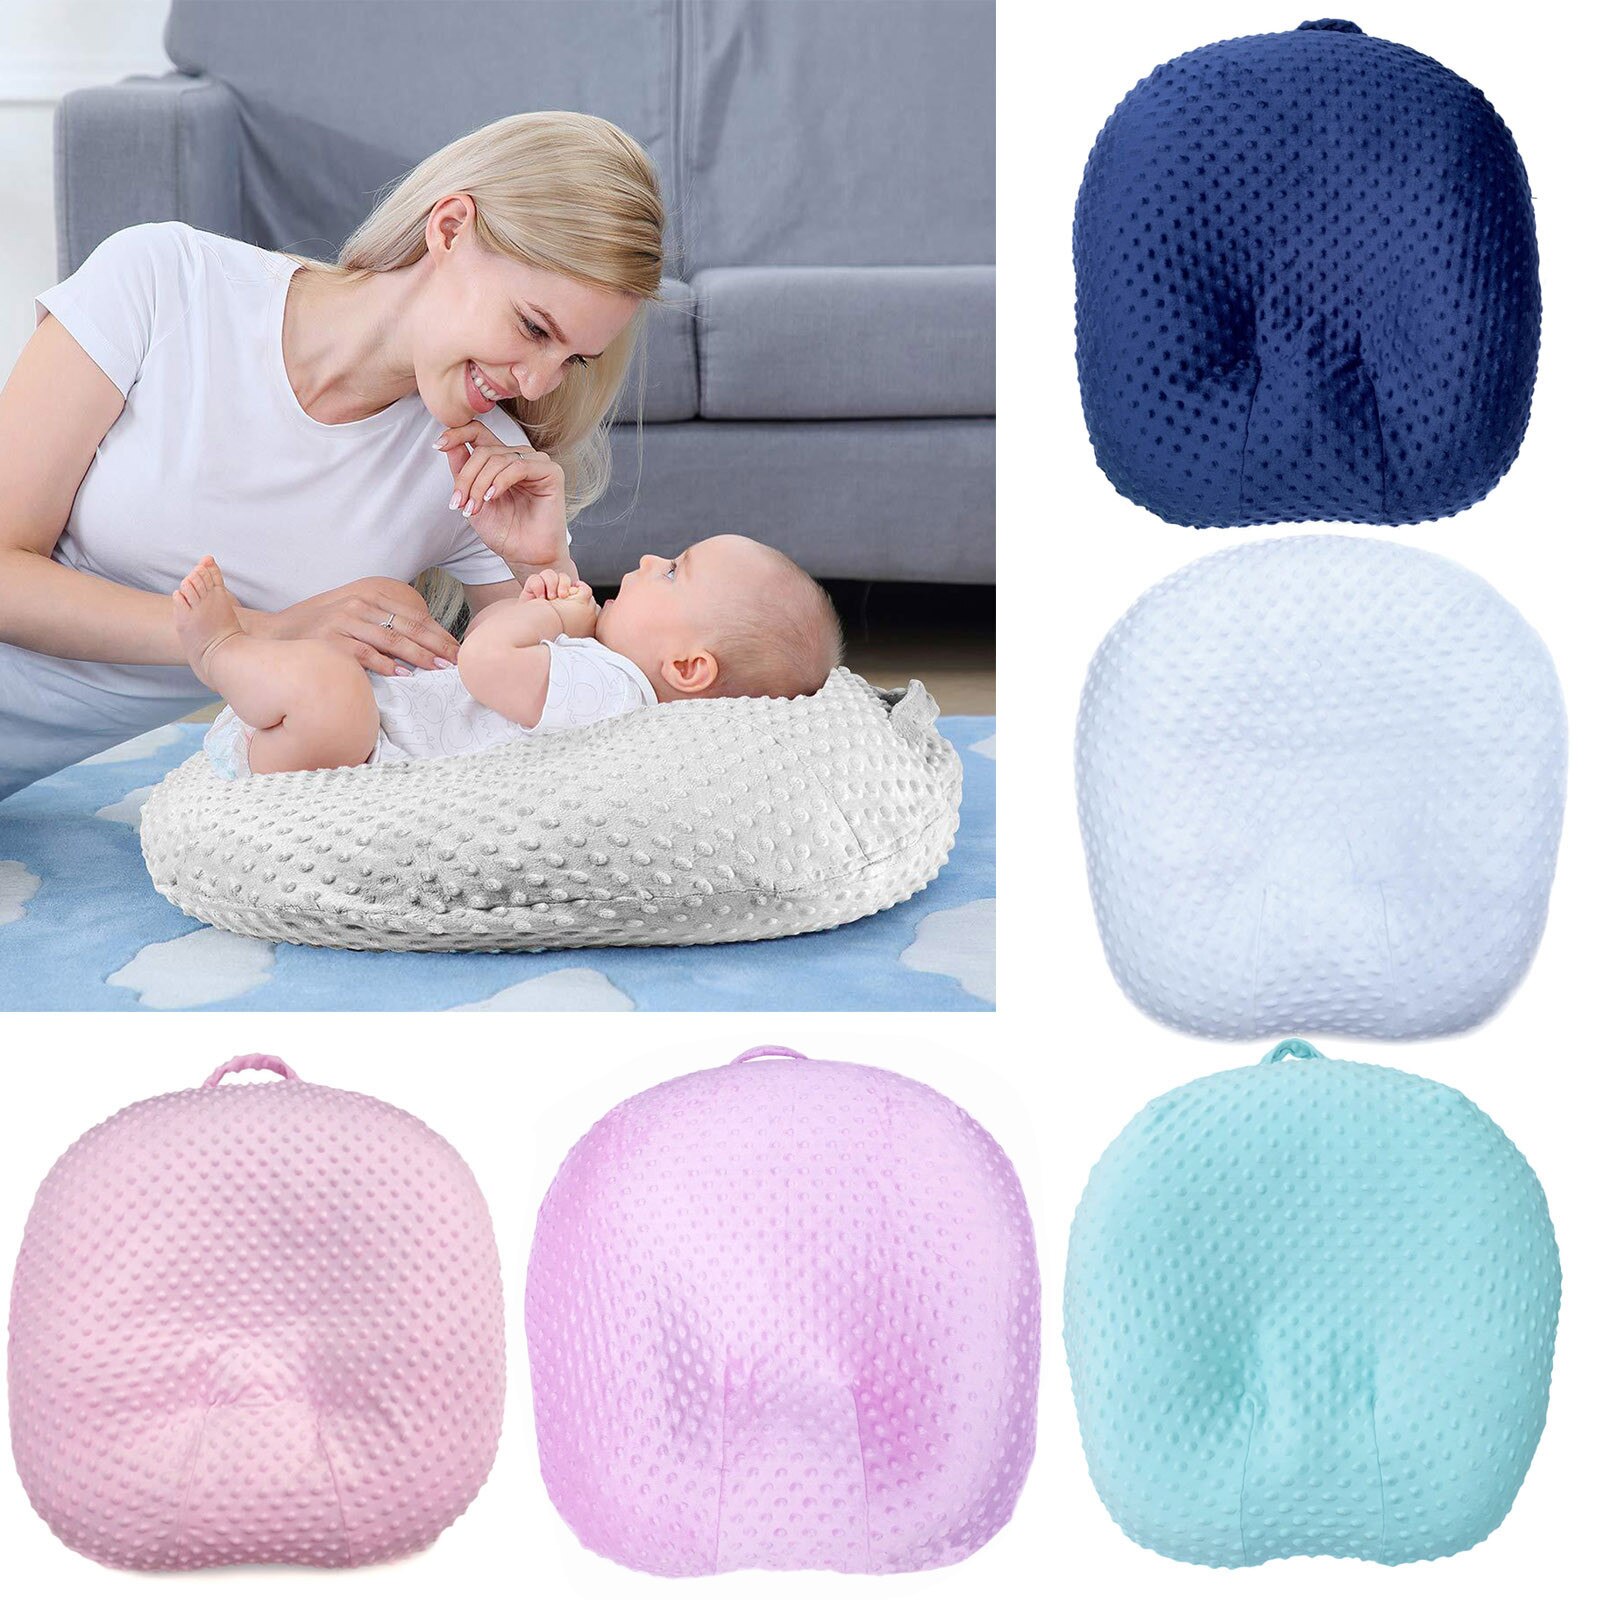 Baby Lounger Kussensloop Verwijderbare Cover Voor Baby Pasgeboren Lounger Wasbaar Verstelbare Size Slapen Pad Cover Kussensloop